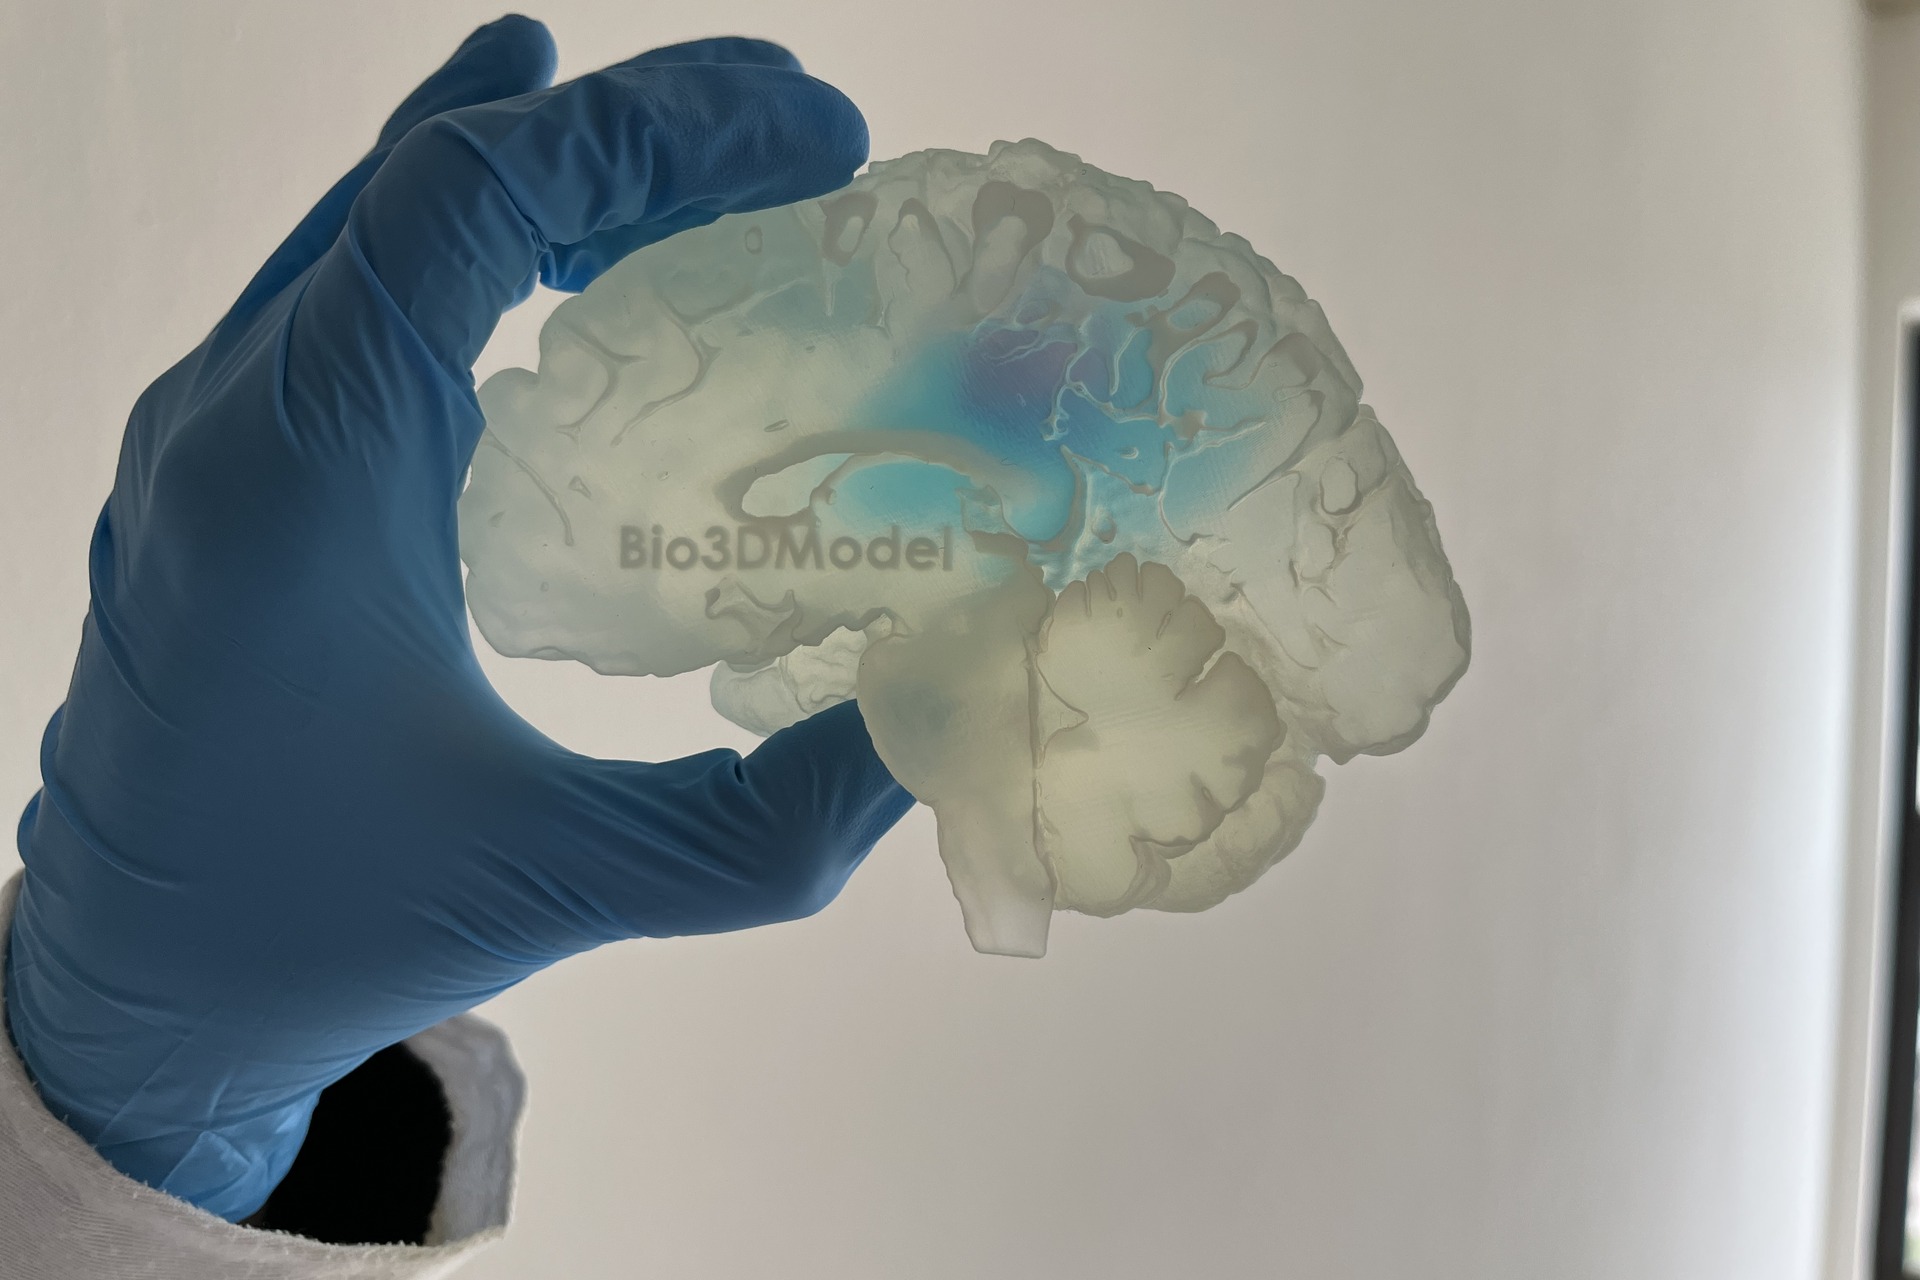 Людський мозок: репродукція мозку, ураженого метастазами, надрукована в 3D італійською компанією Bio3DModel